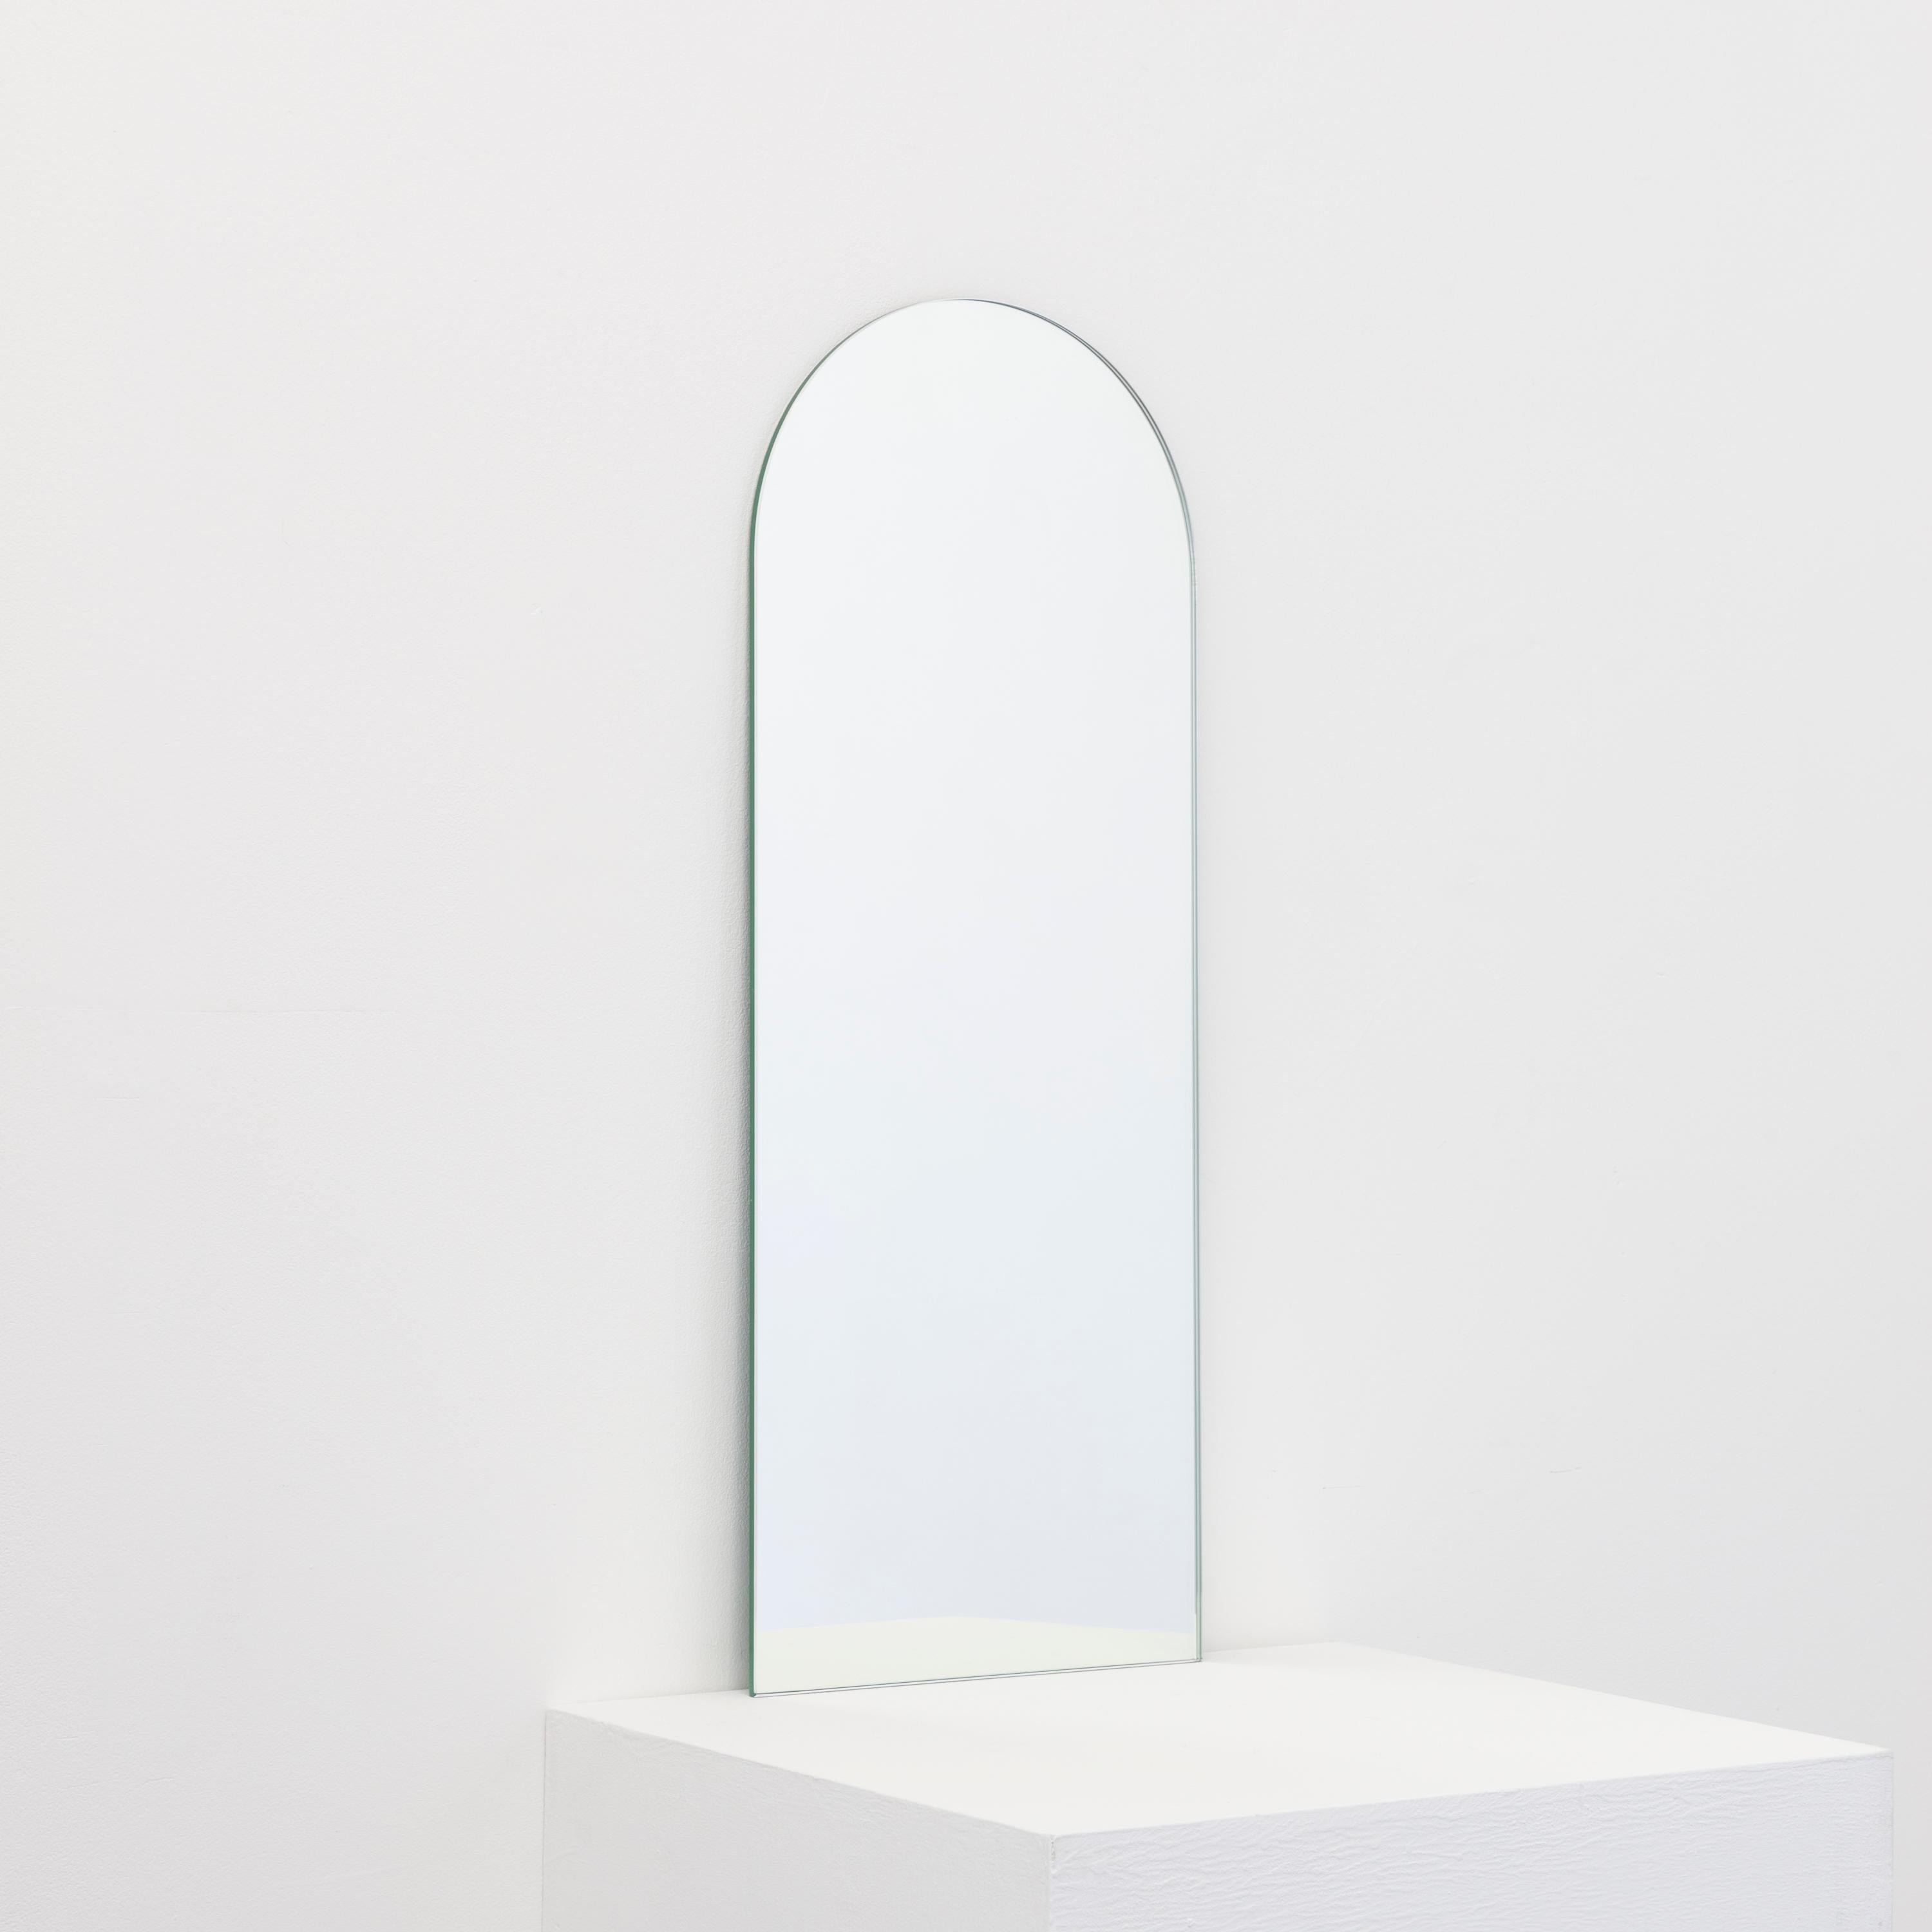 Miroir sans cadre de forme rectangulaire minimaliste avec un effet flottant. Un design de qualité qui garantit que le miroir est parfaitement parallèle au mur. Conçu et fabriqué à Londres, au Royaume-Uni.

Equipé de plaques professionnelles non